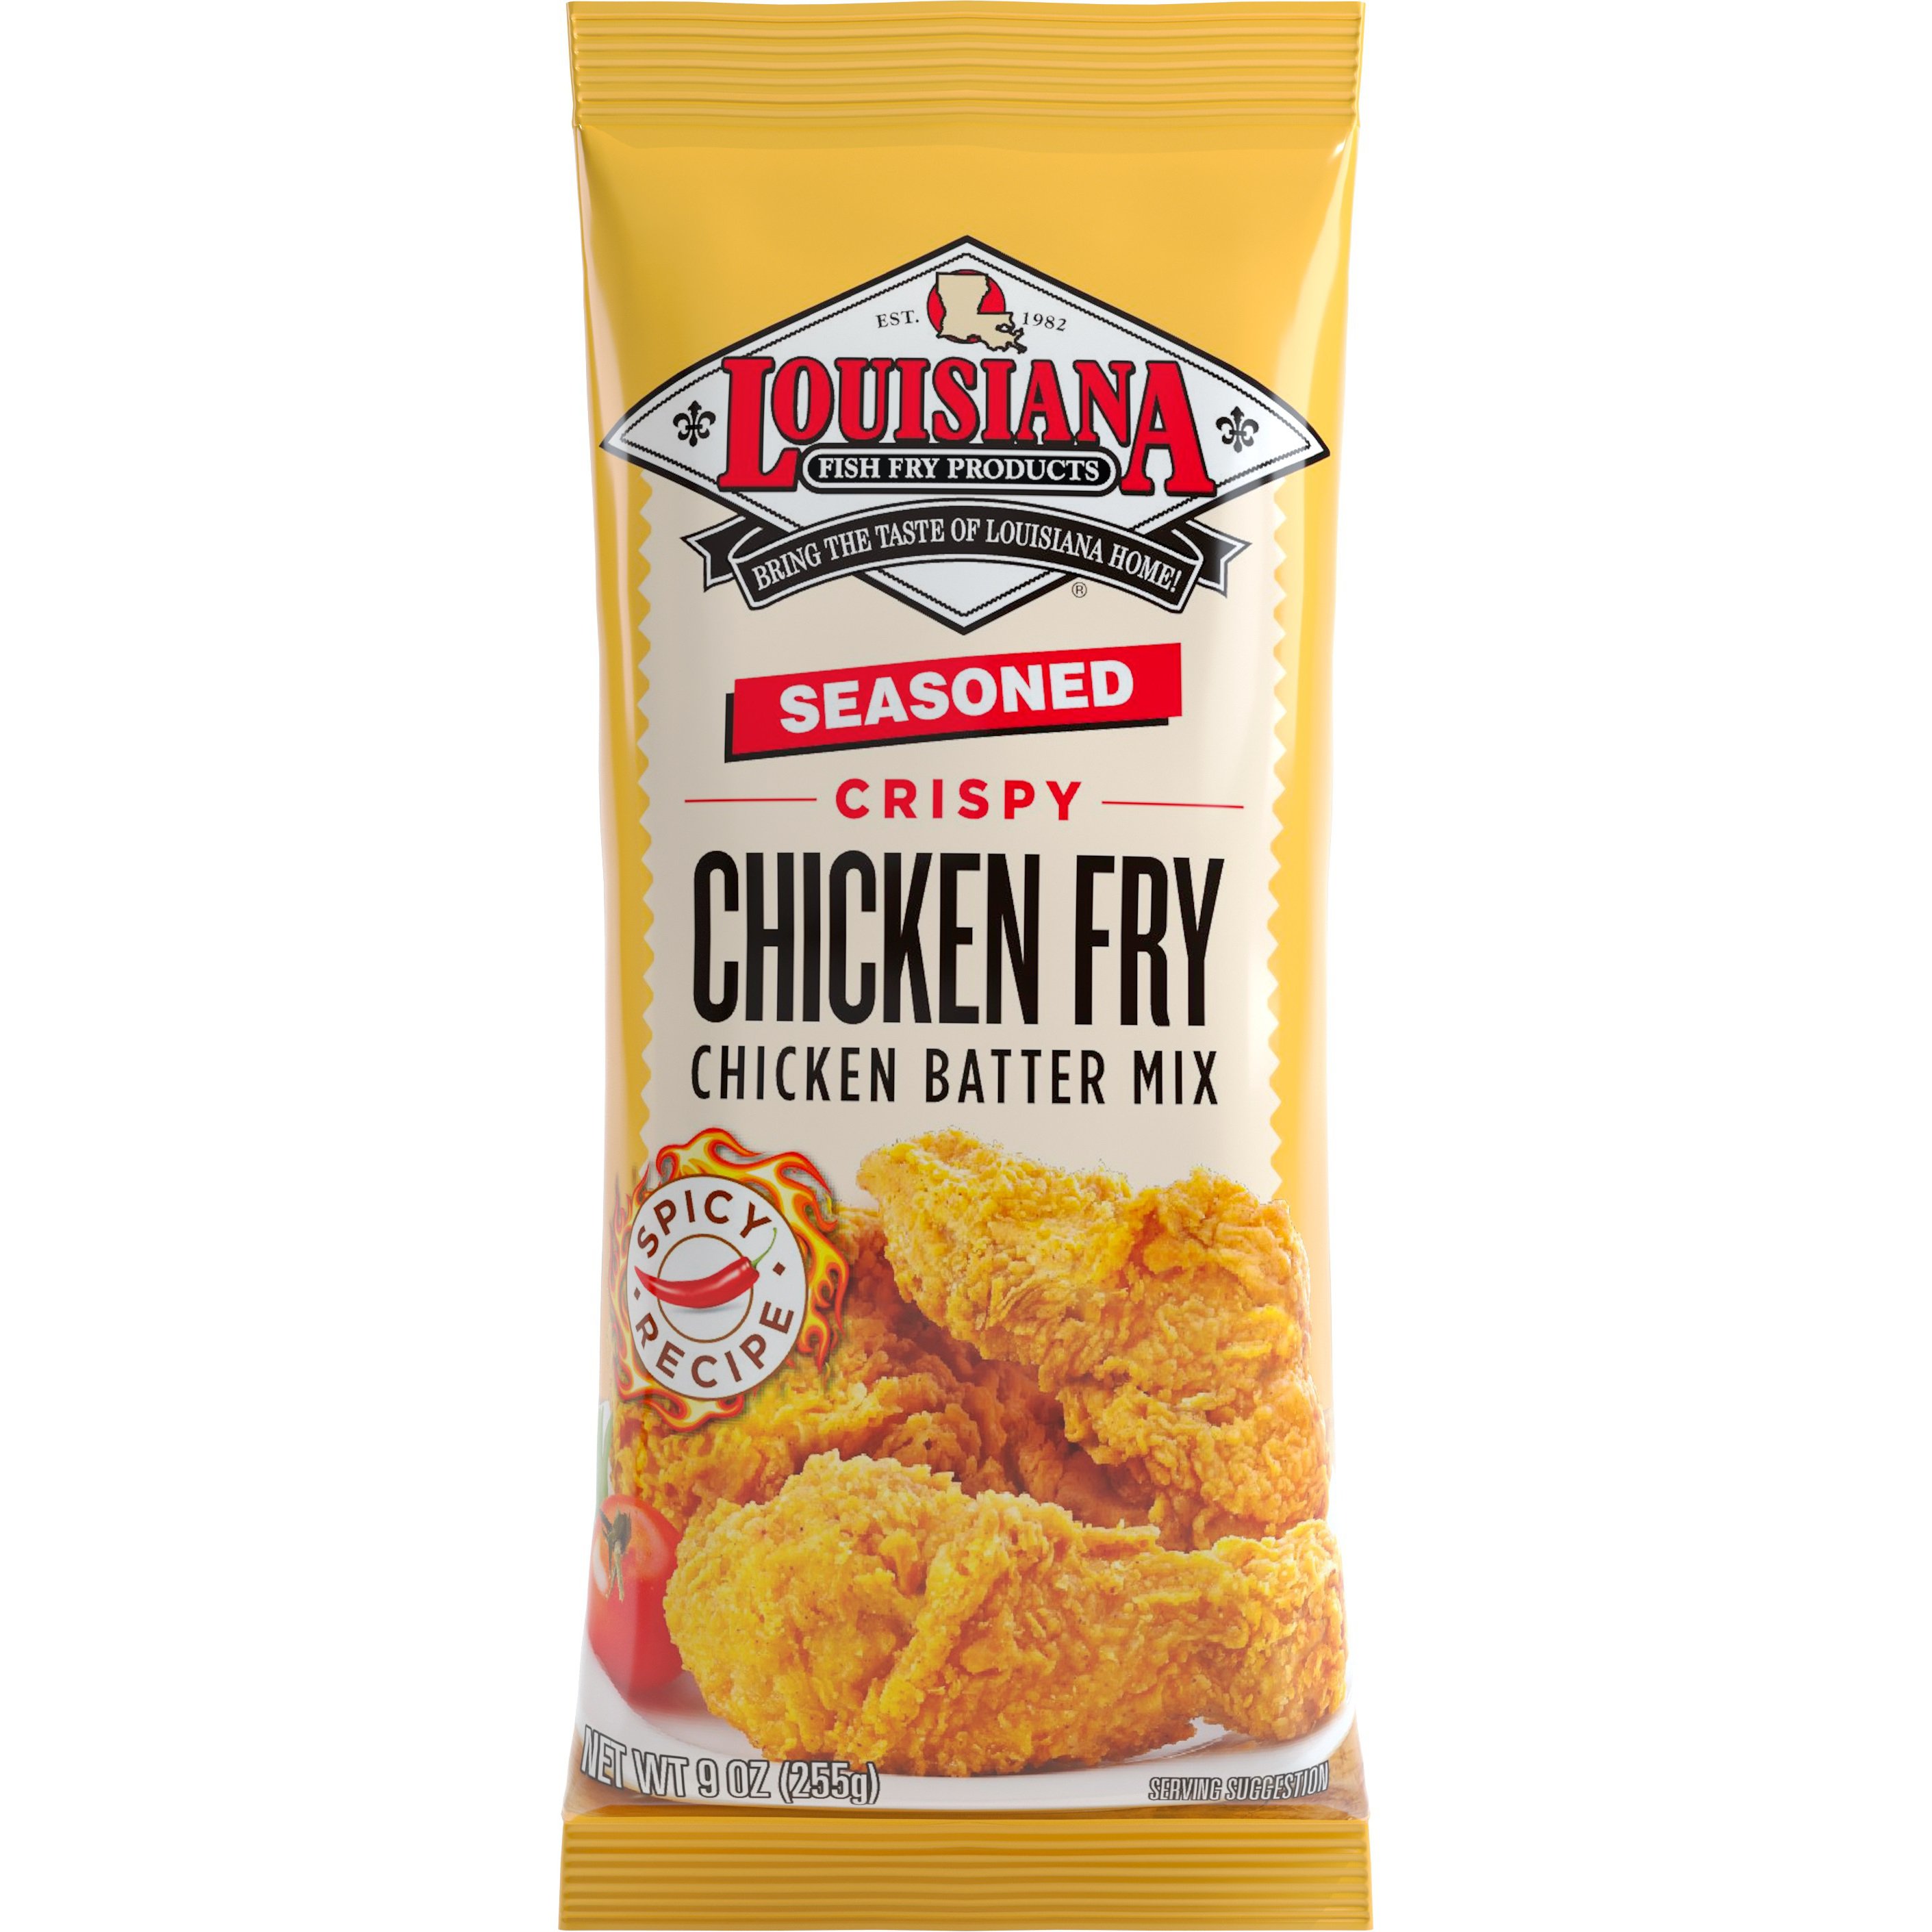 Louisiana Fish Fry Products Seasoned Chicken Fry